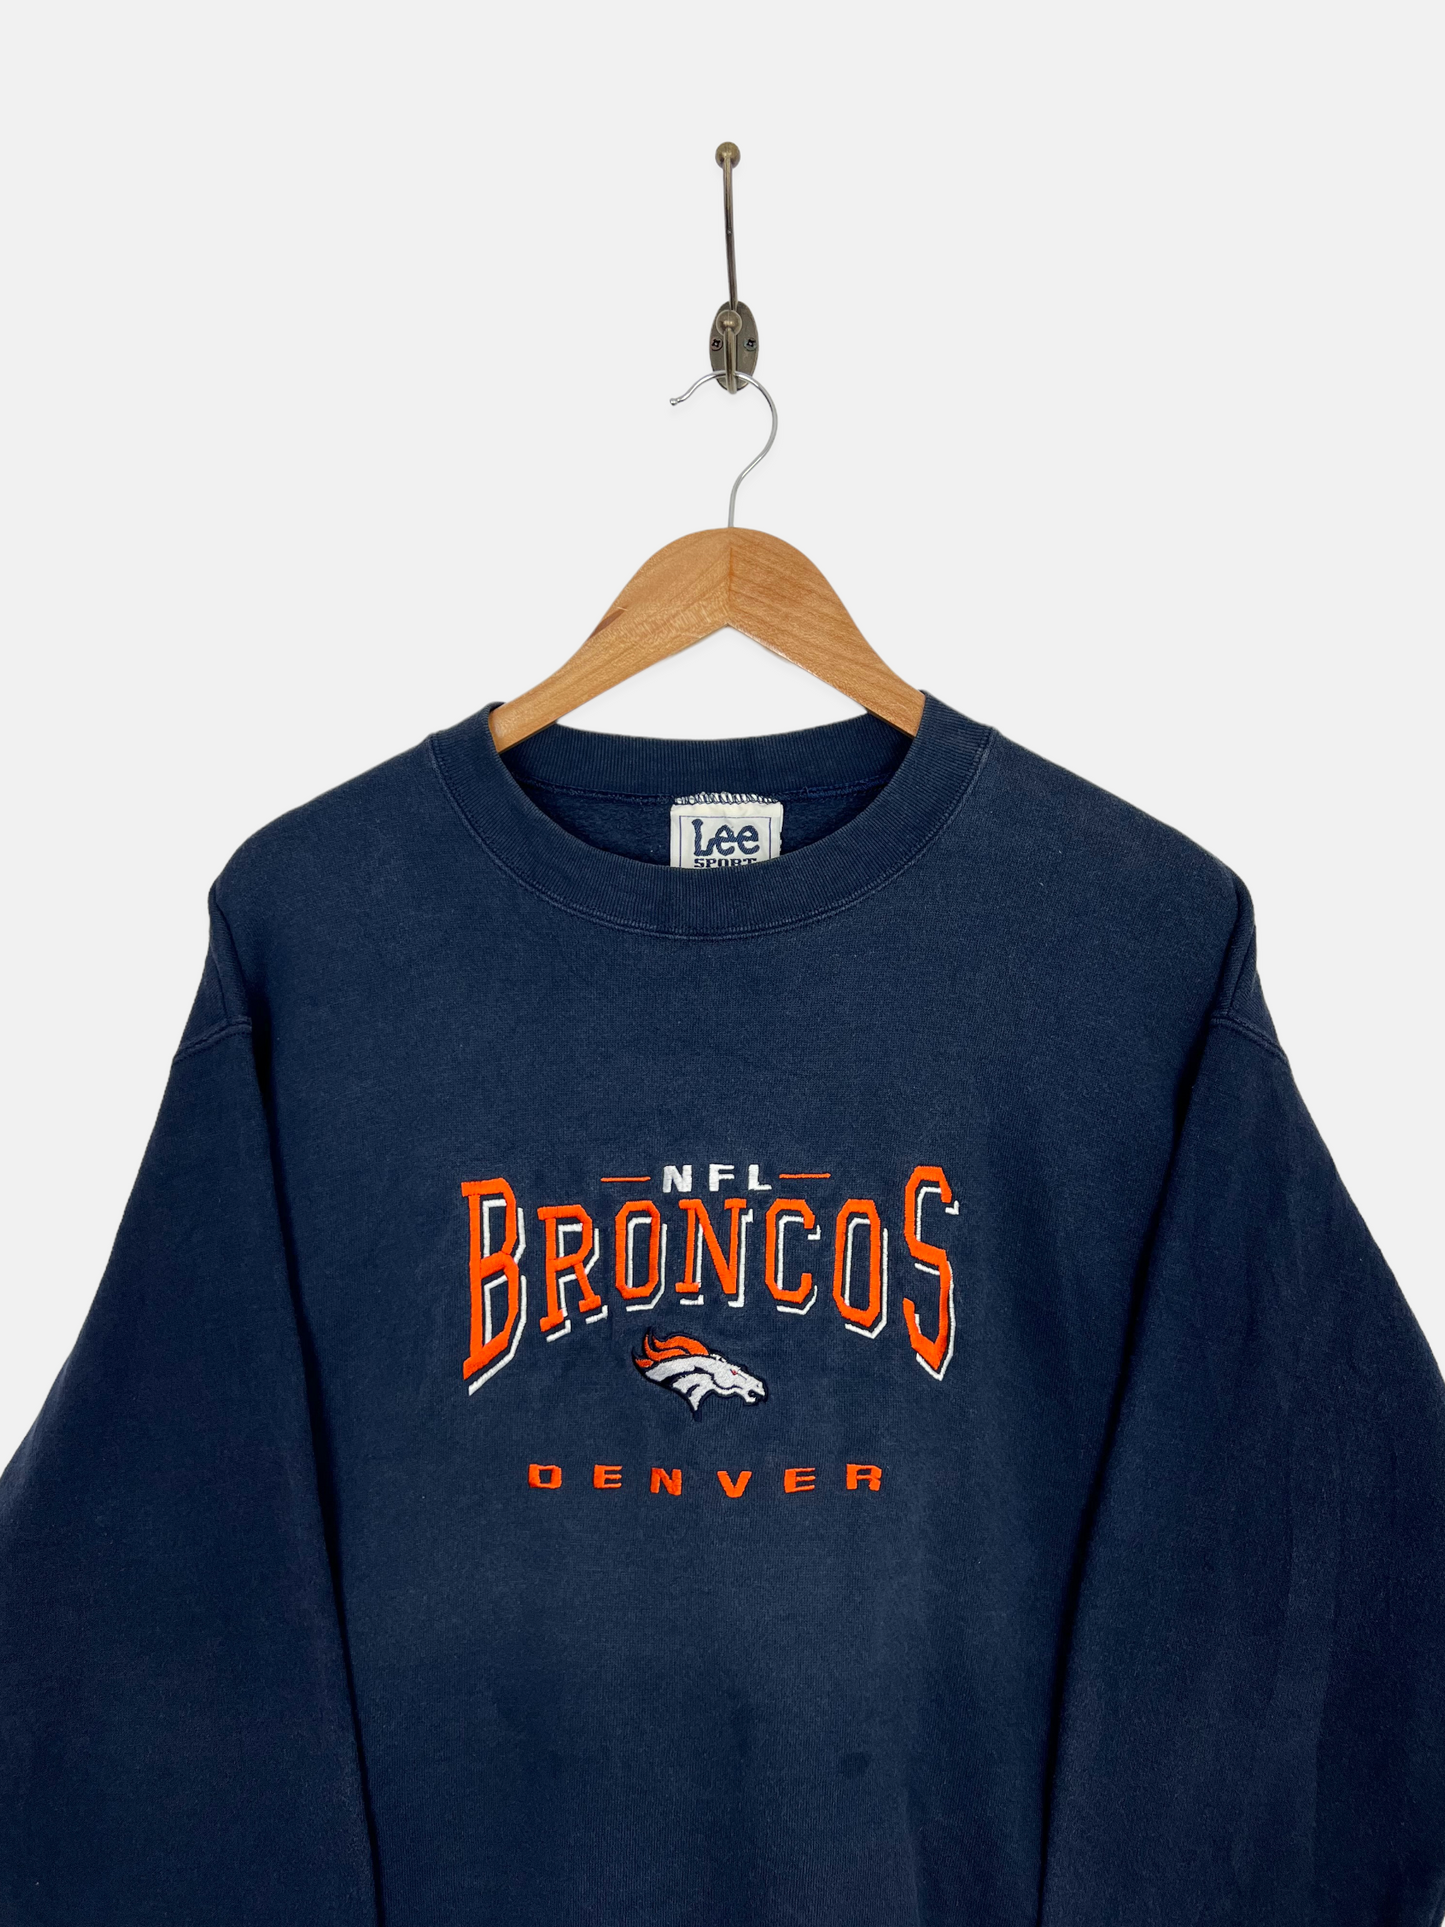 90's Denver Broncos NFL Embroidered Vintage Sweatshirt Size M